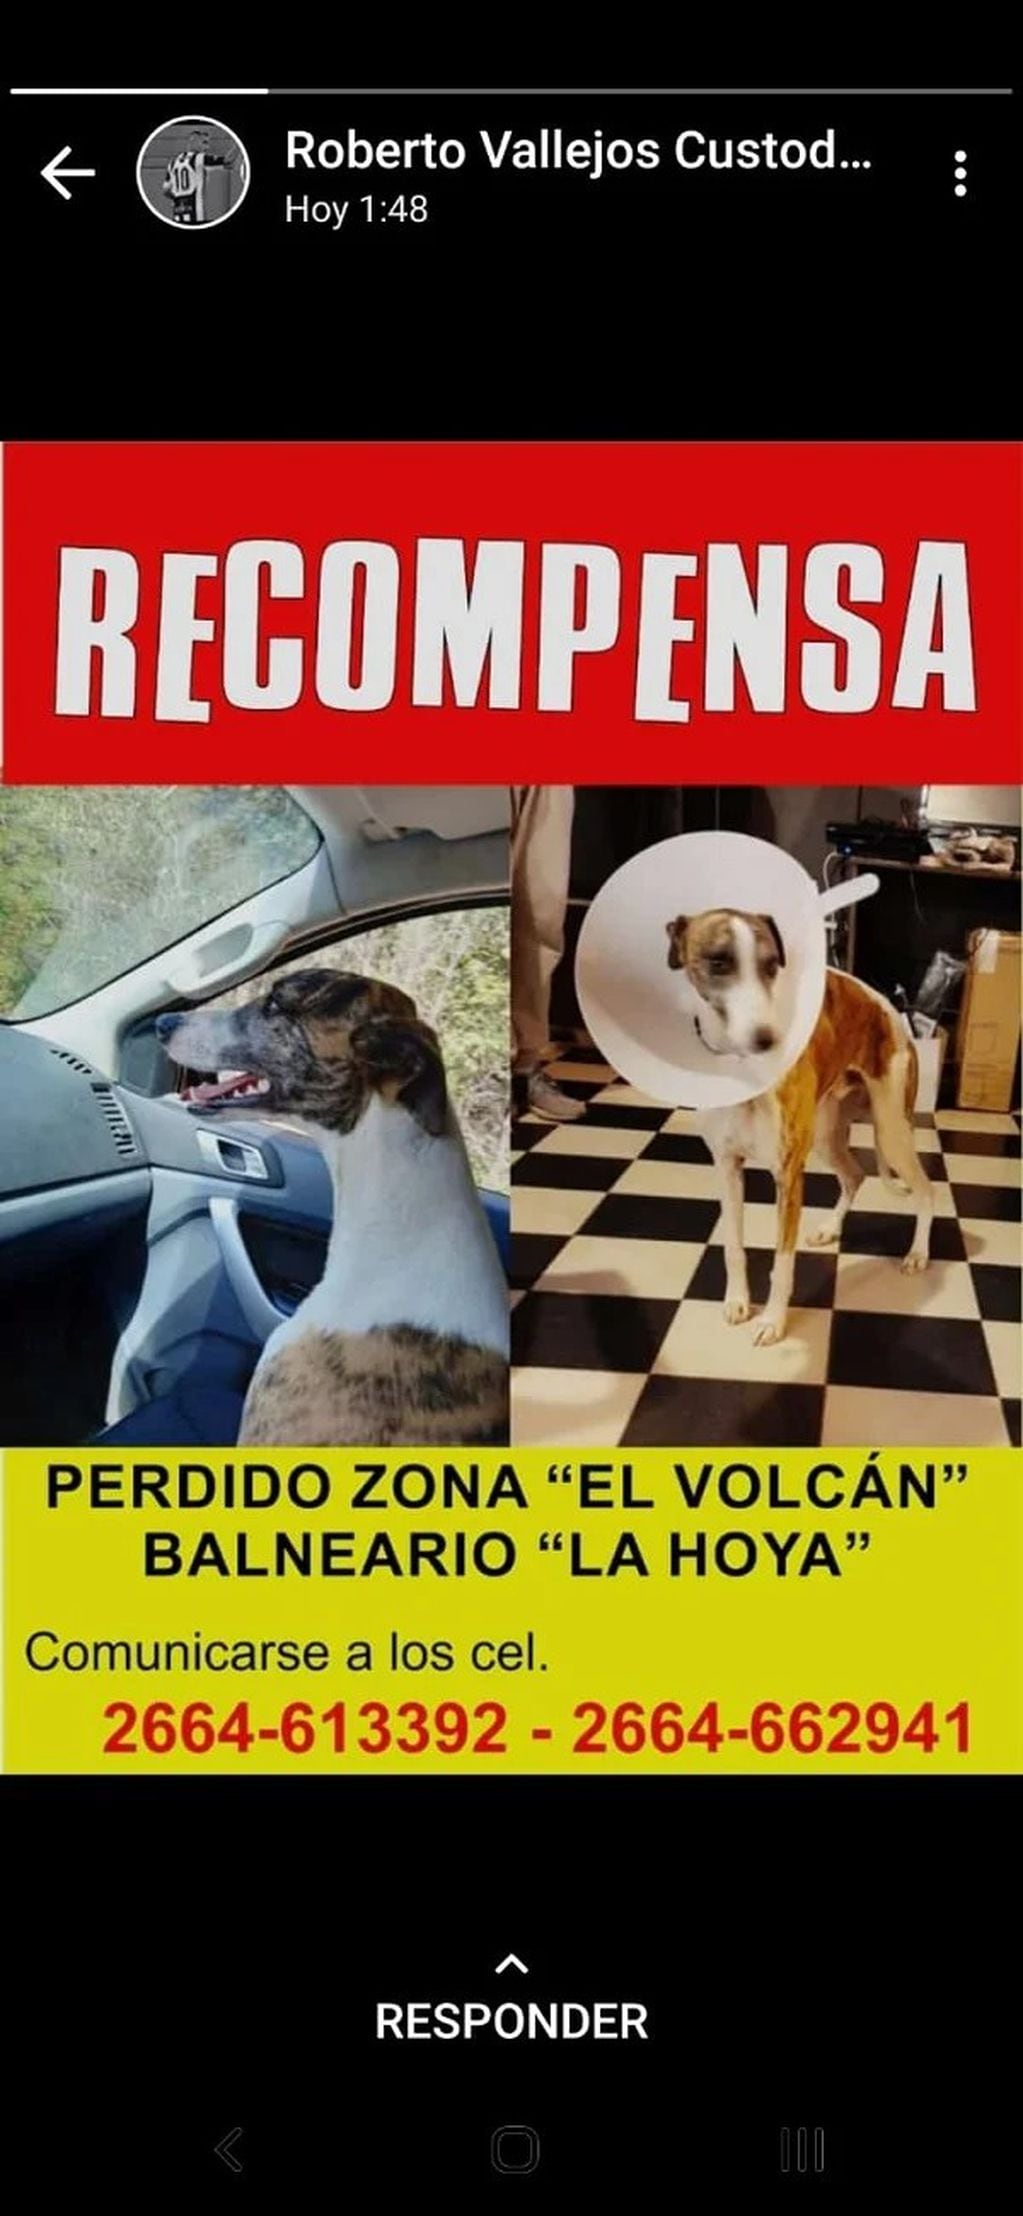 Ofrecen recompensa por el perro de Alberto Rodríguez Saá.